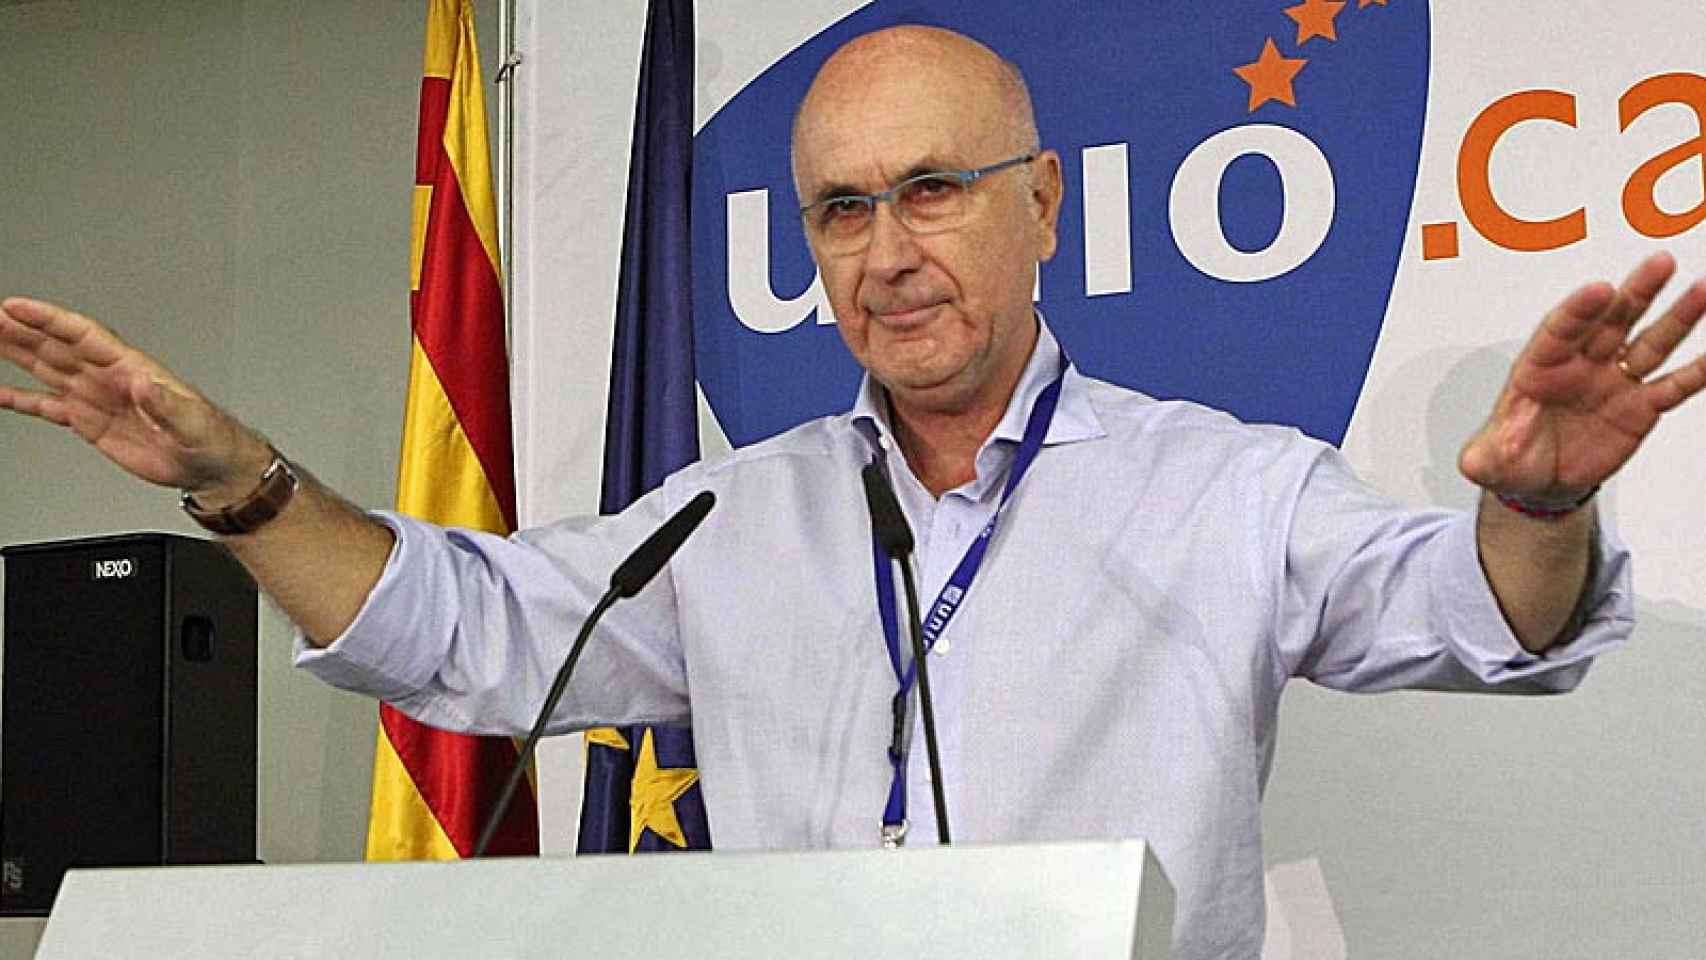 El ex líder de Unió Josep Antoni Duran i Lleida